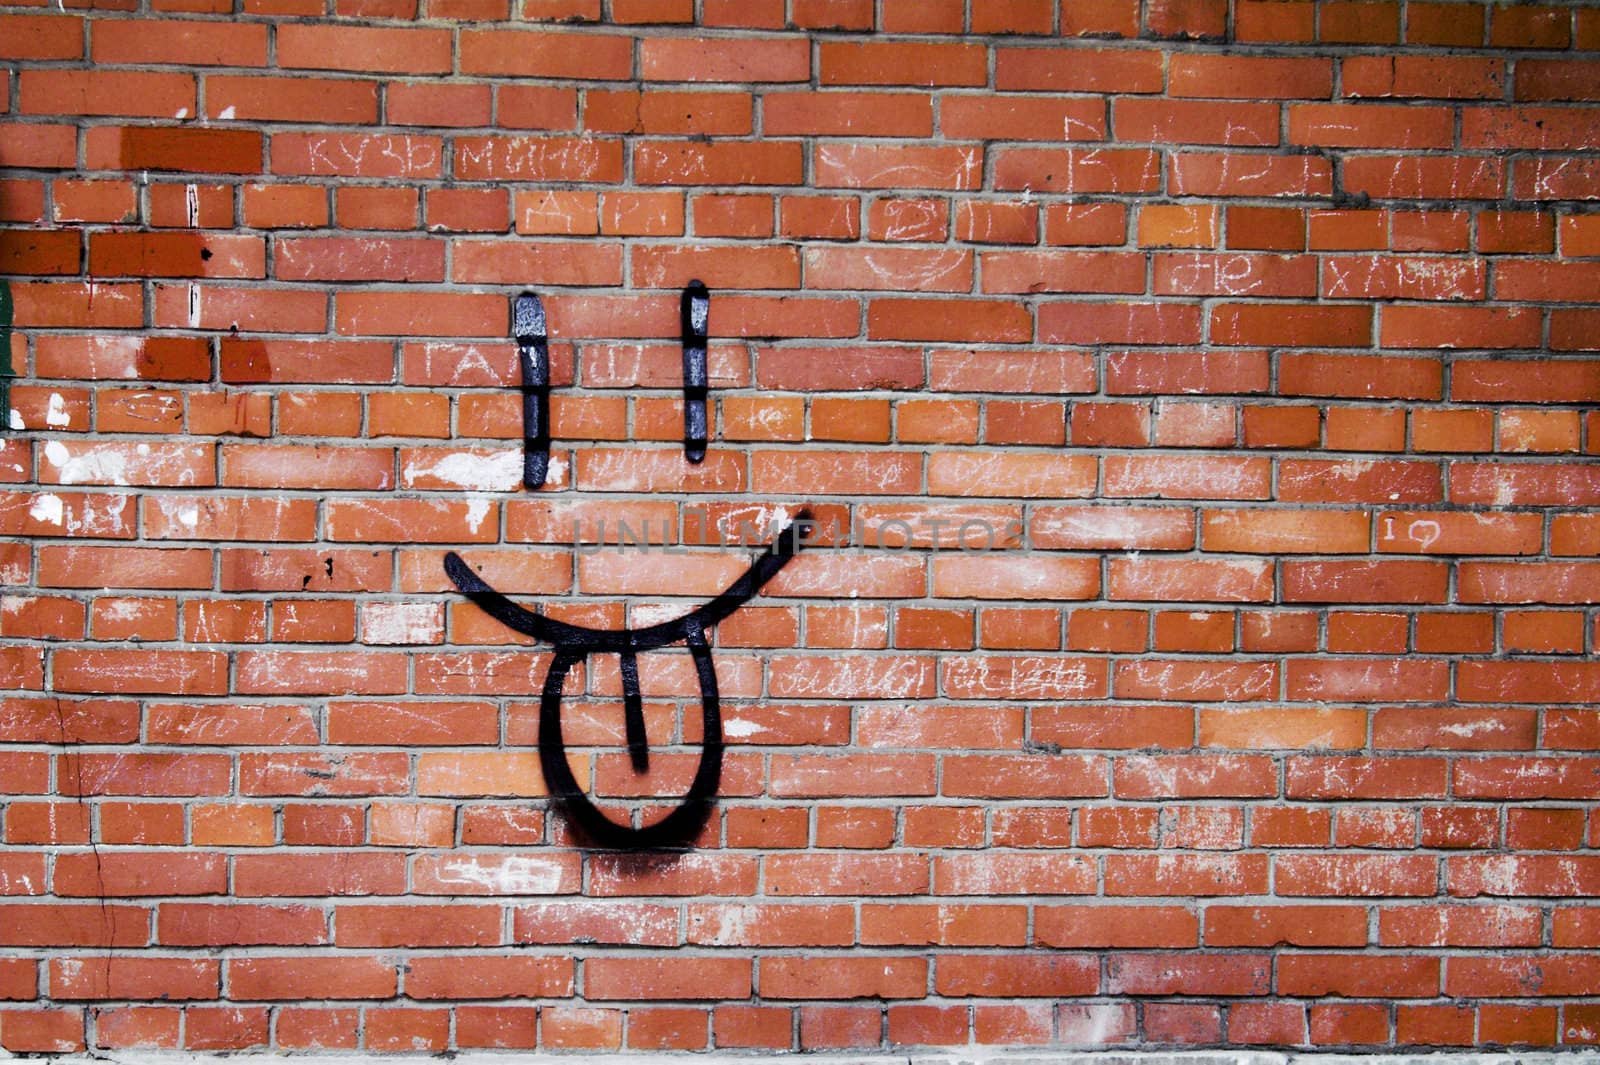 Brick Wall and Smile Graffiti  by simfan